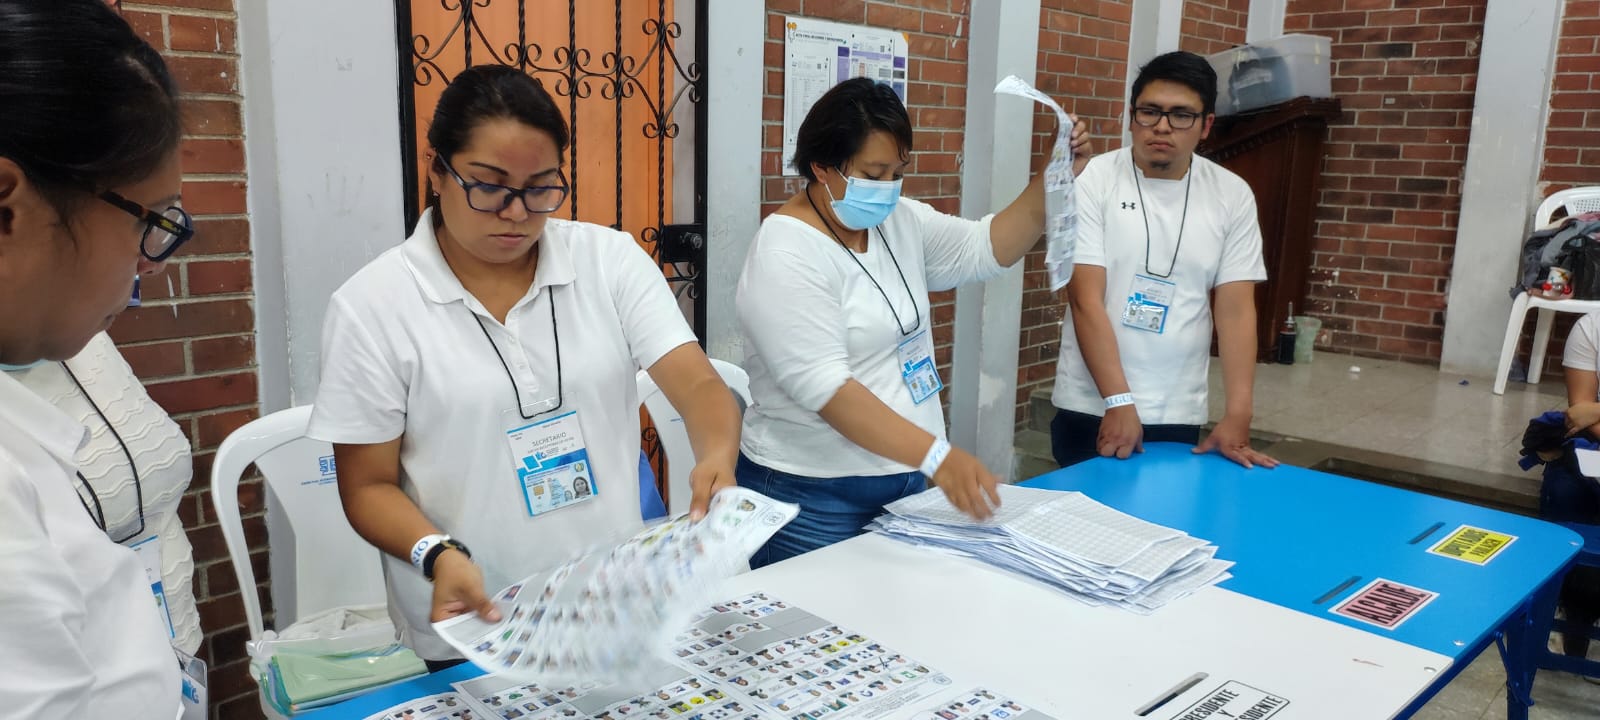 ELECCIONES EN GUATEMALA 2023